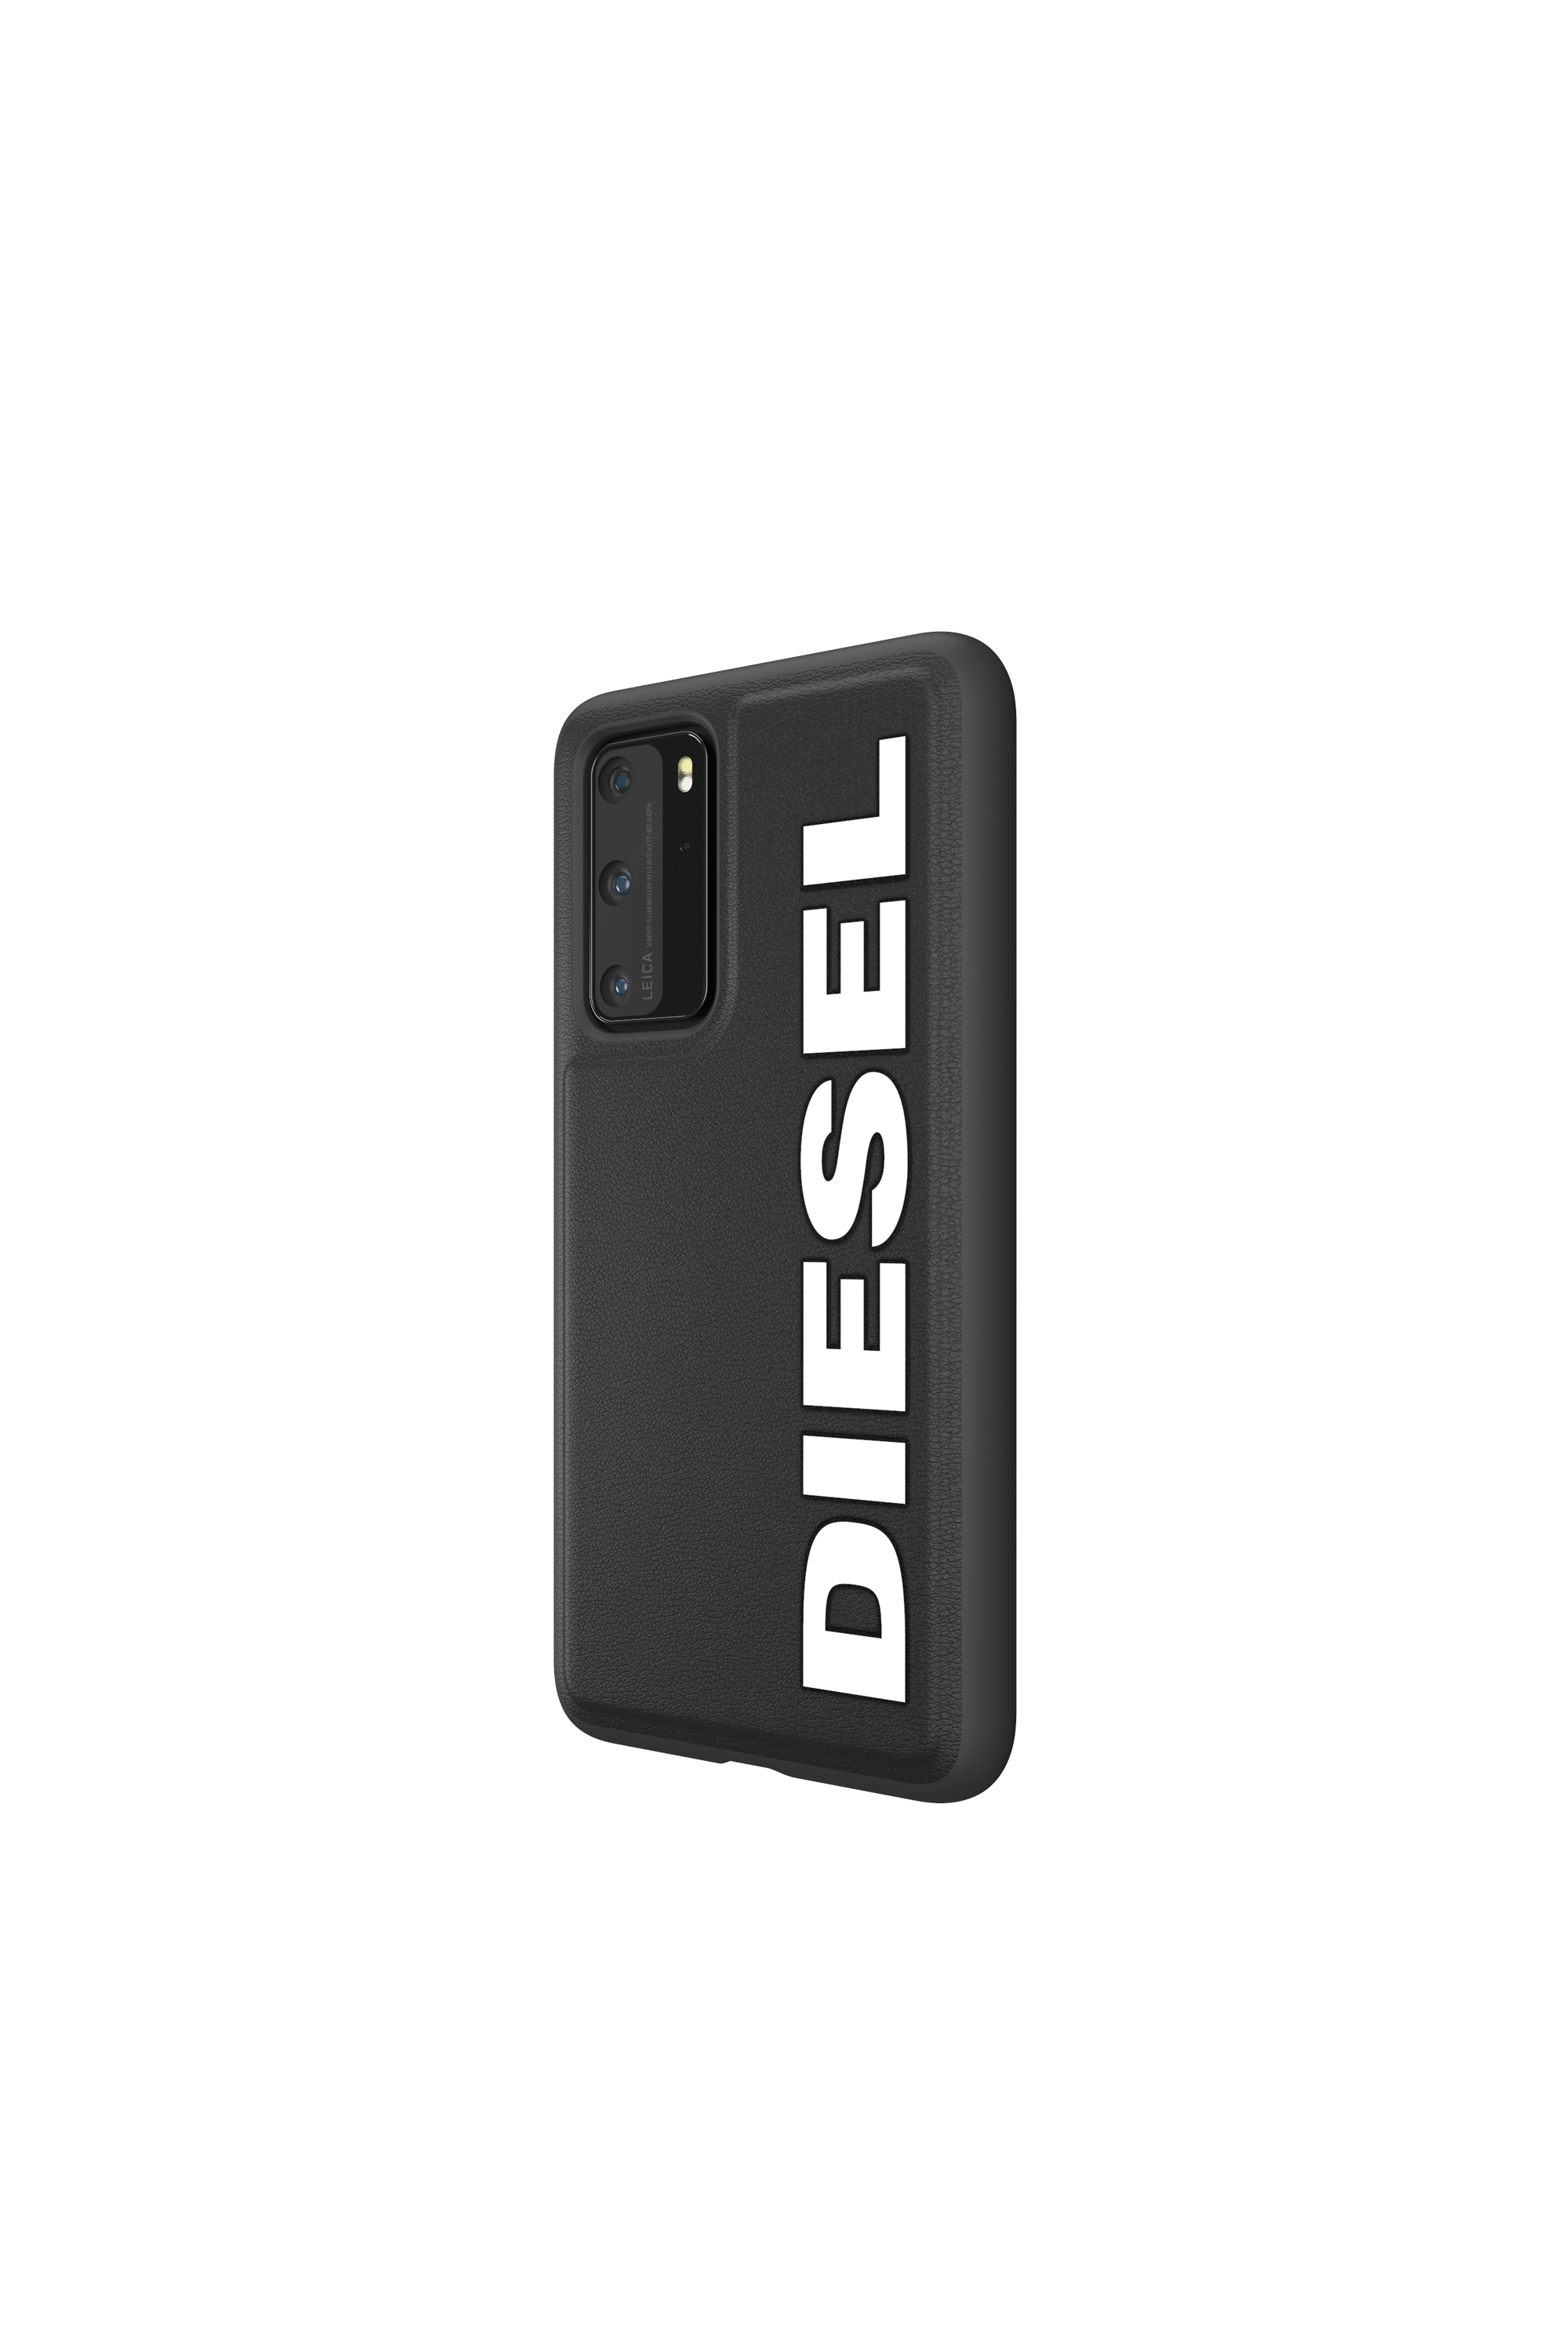 Diesel - 42495, Black - Image 3